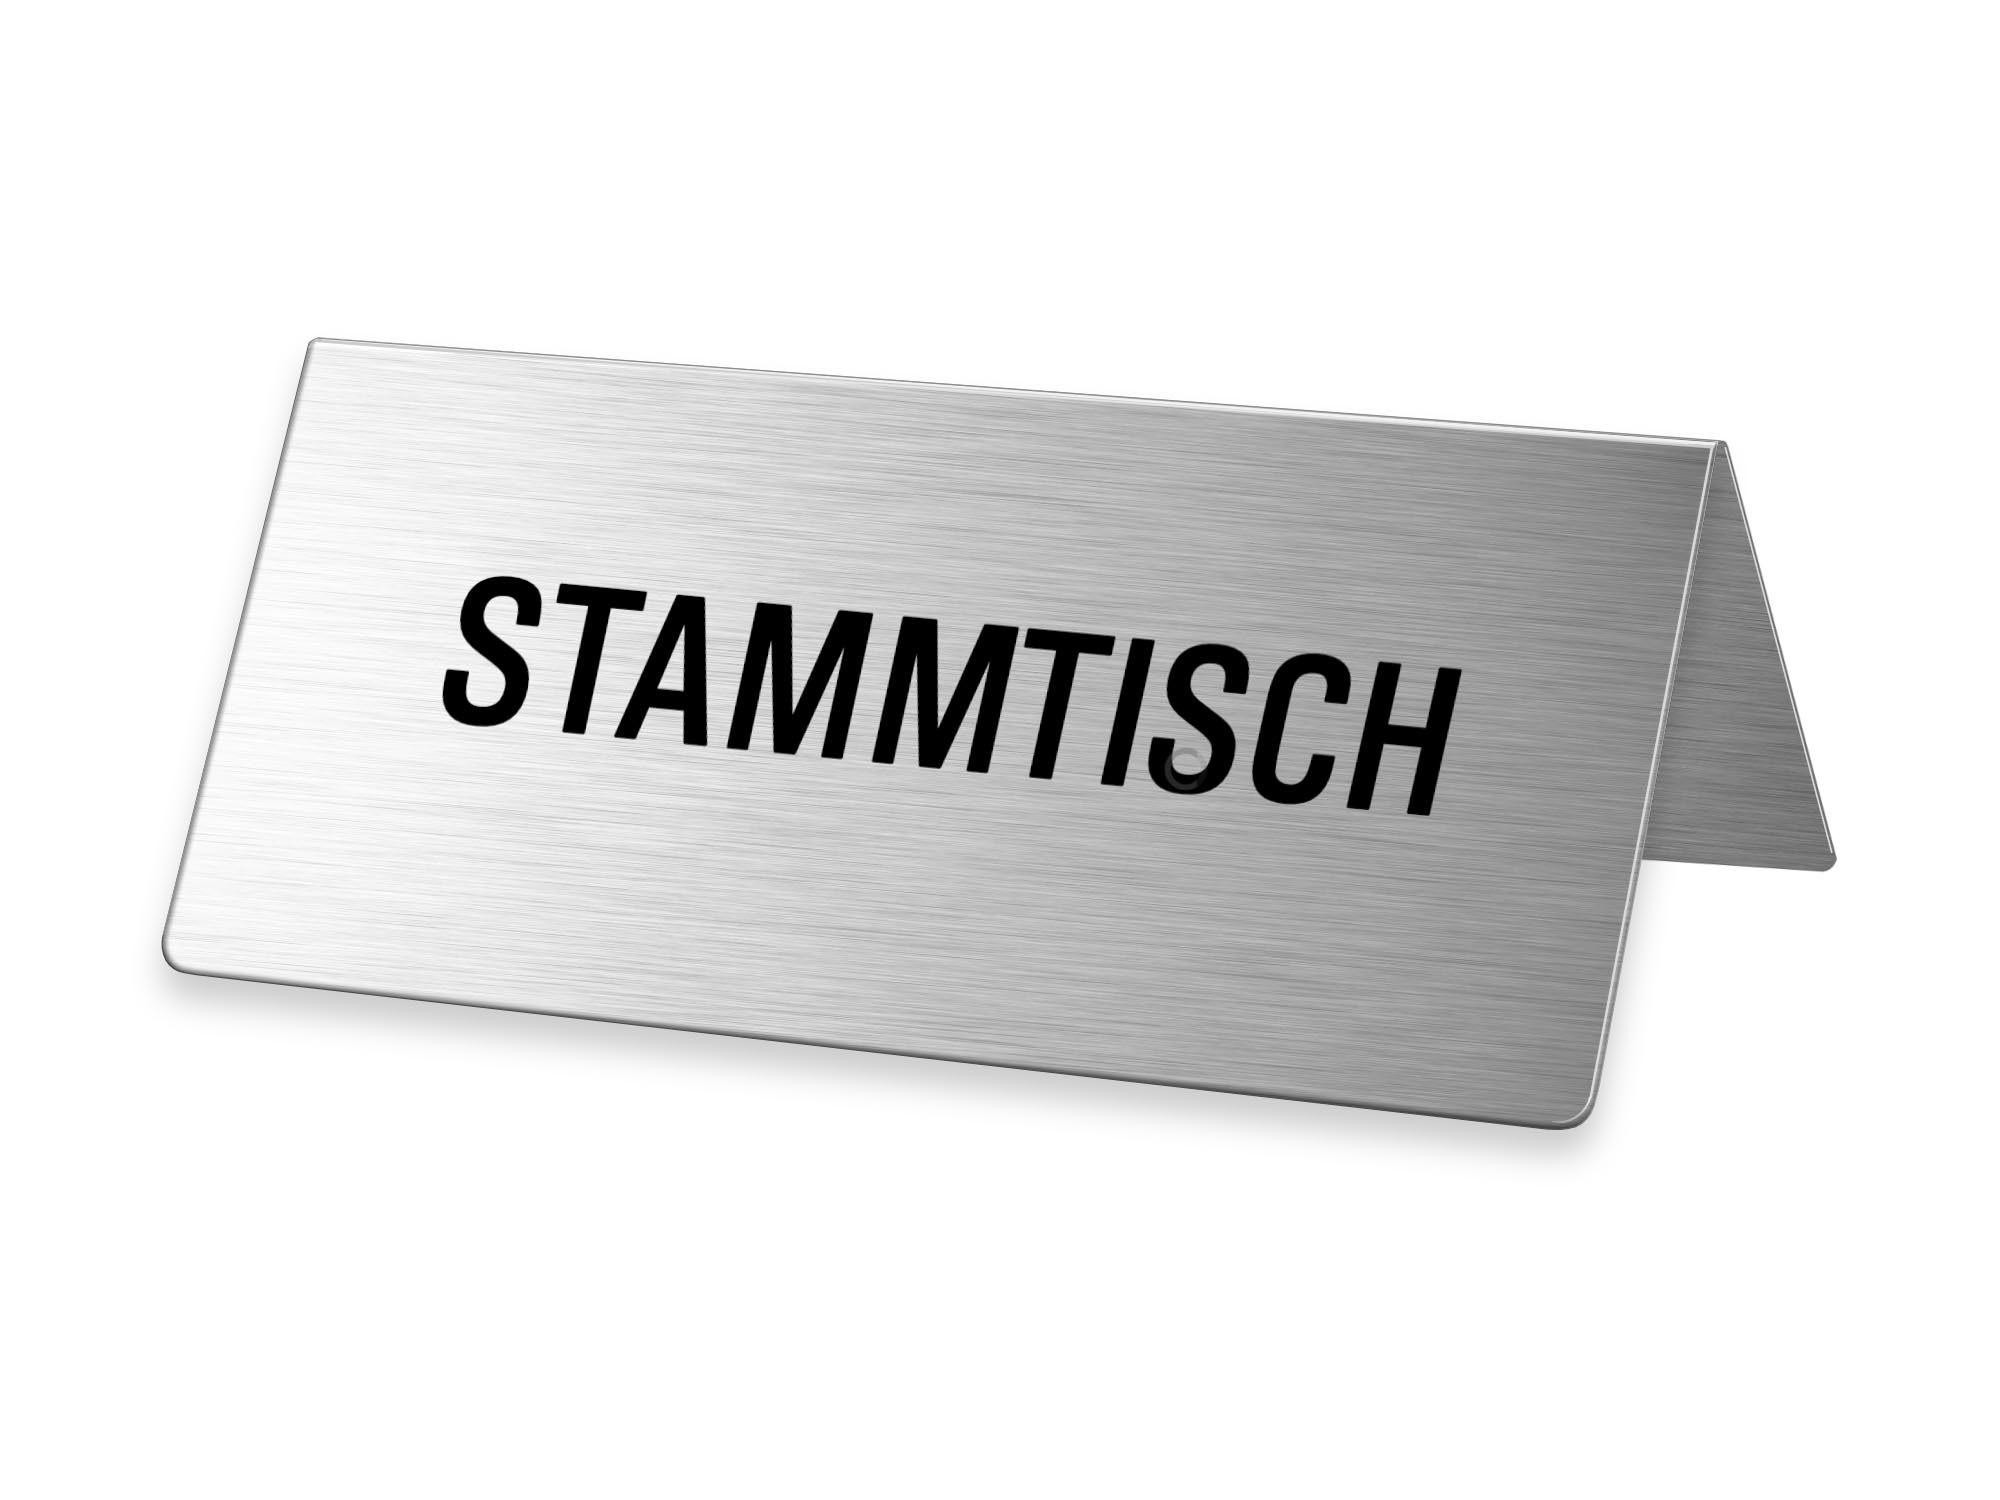 1 Stück Edelstahl Nichtraucher-Schilder Metallschild/Tischaufsteller 5,5 x 5 x 